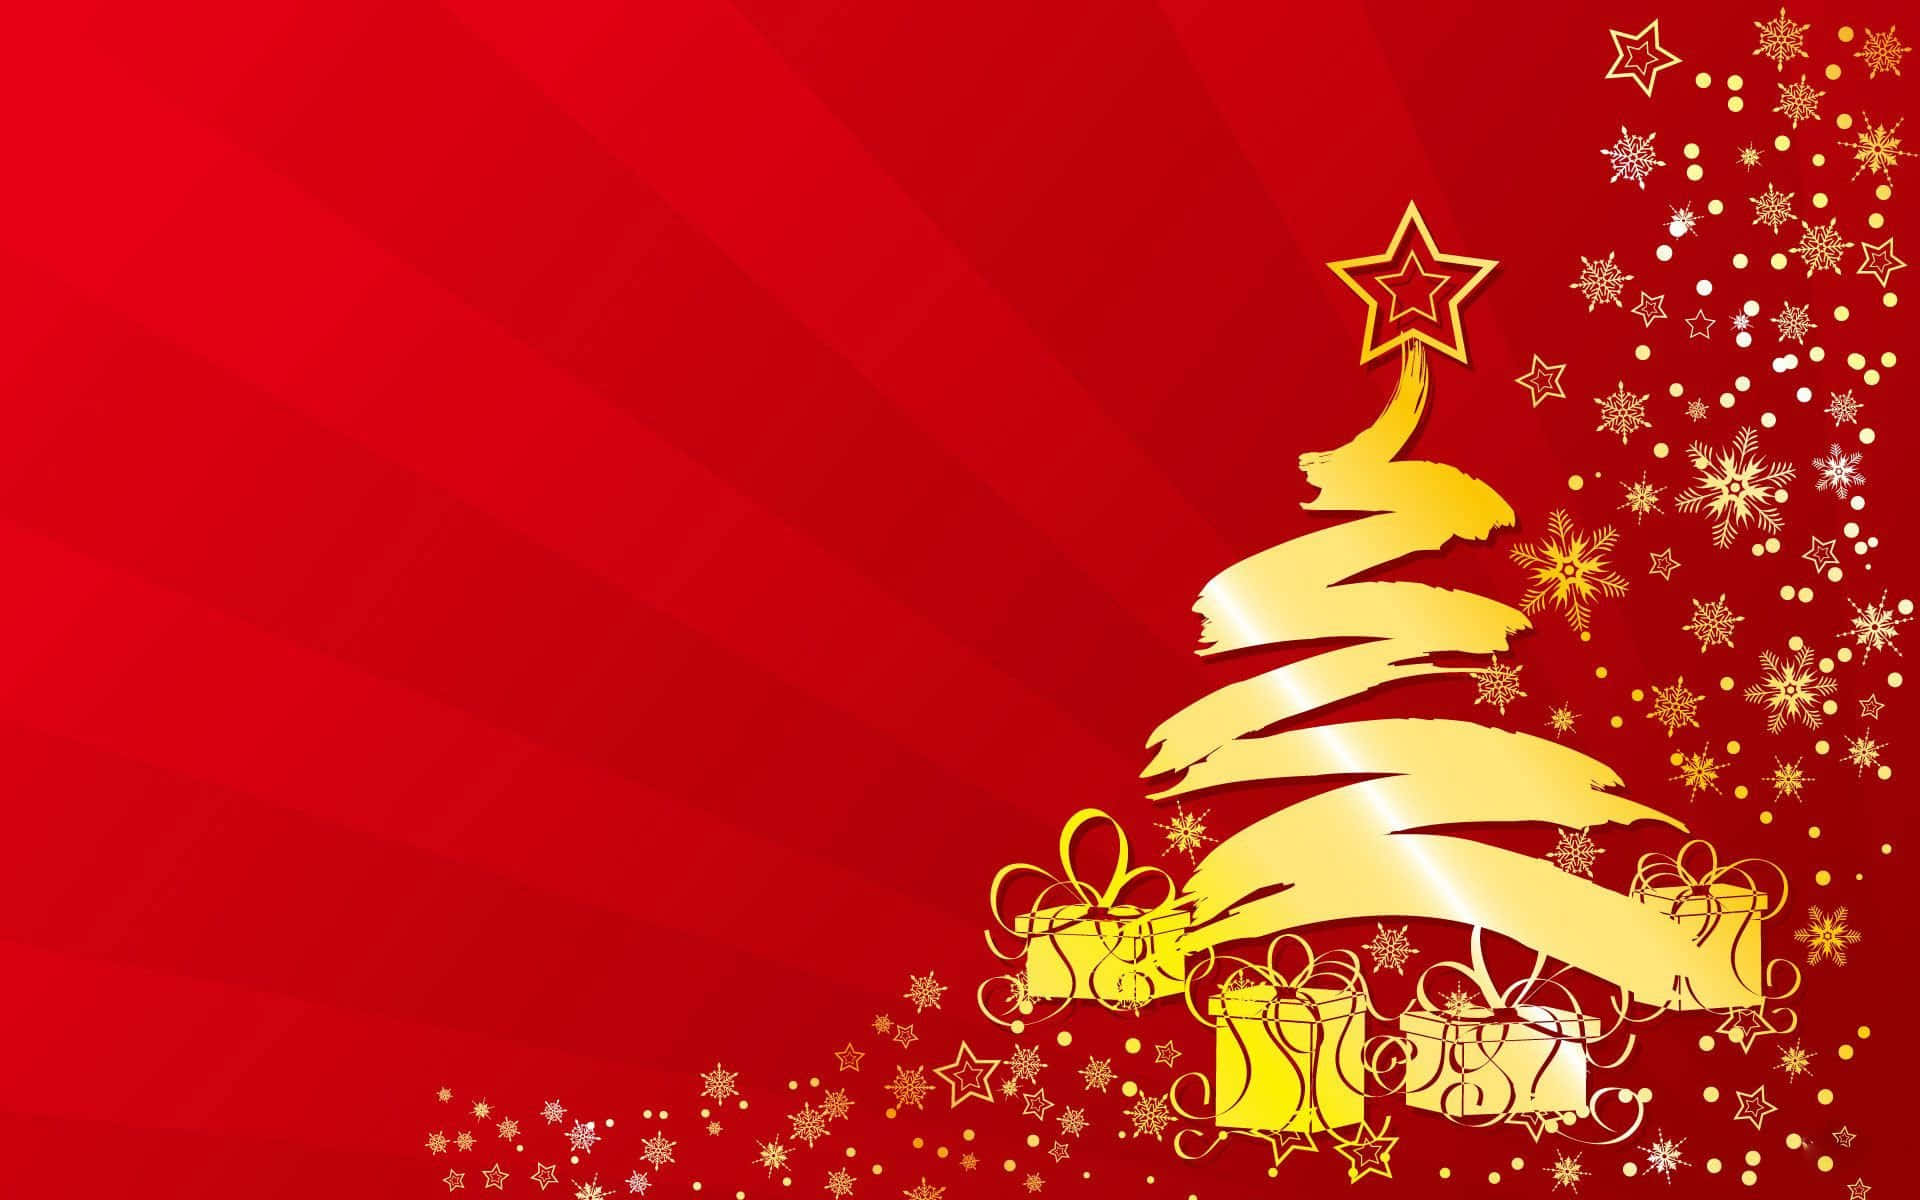 Begynd at skabe dine festlige glædelige erindringer i år jul!